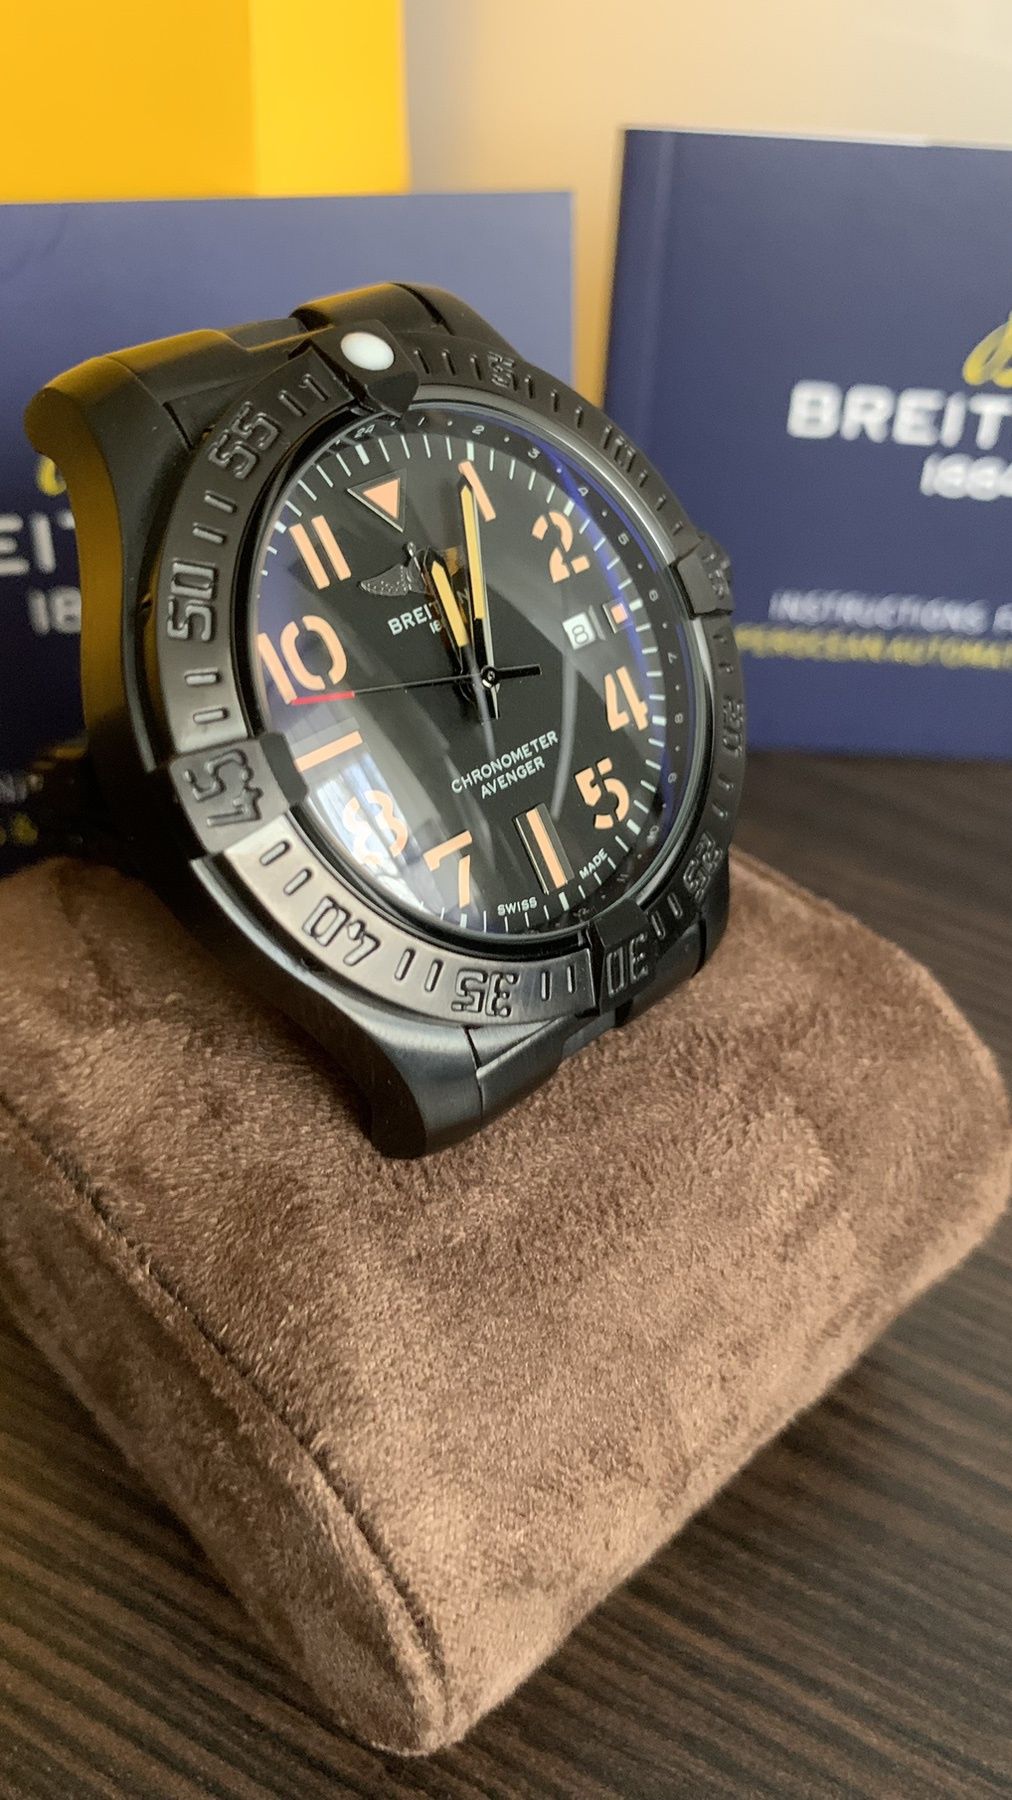 Breitling Avenger chronometr night mission